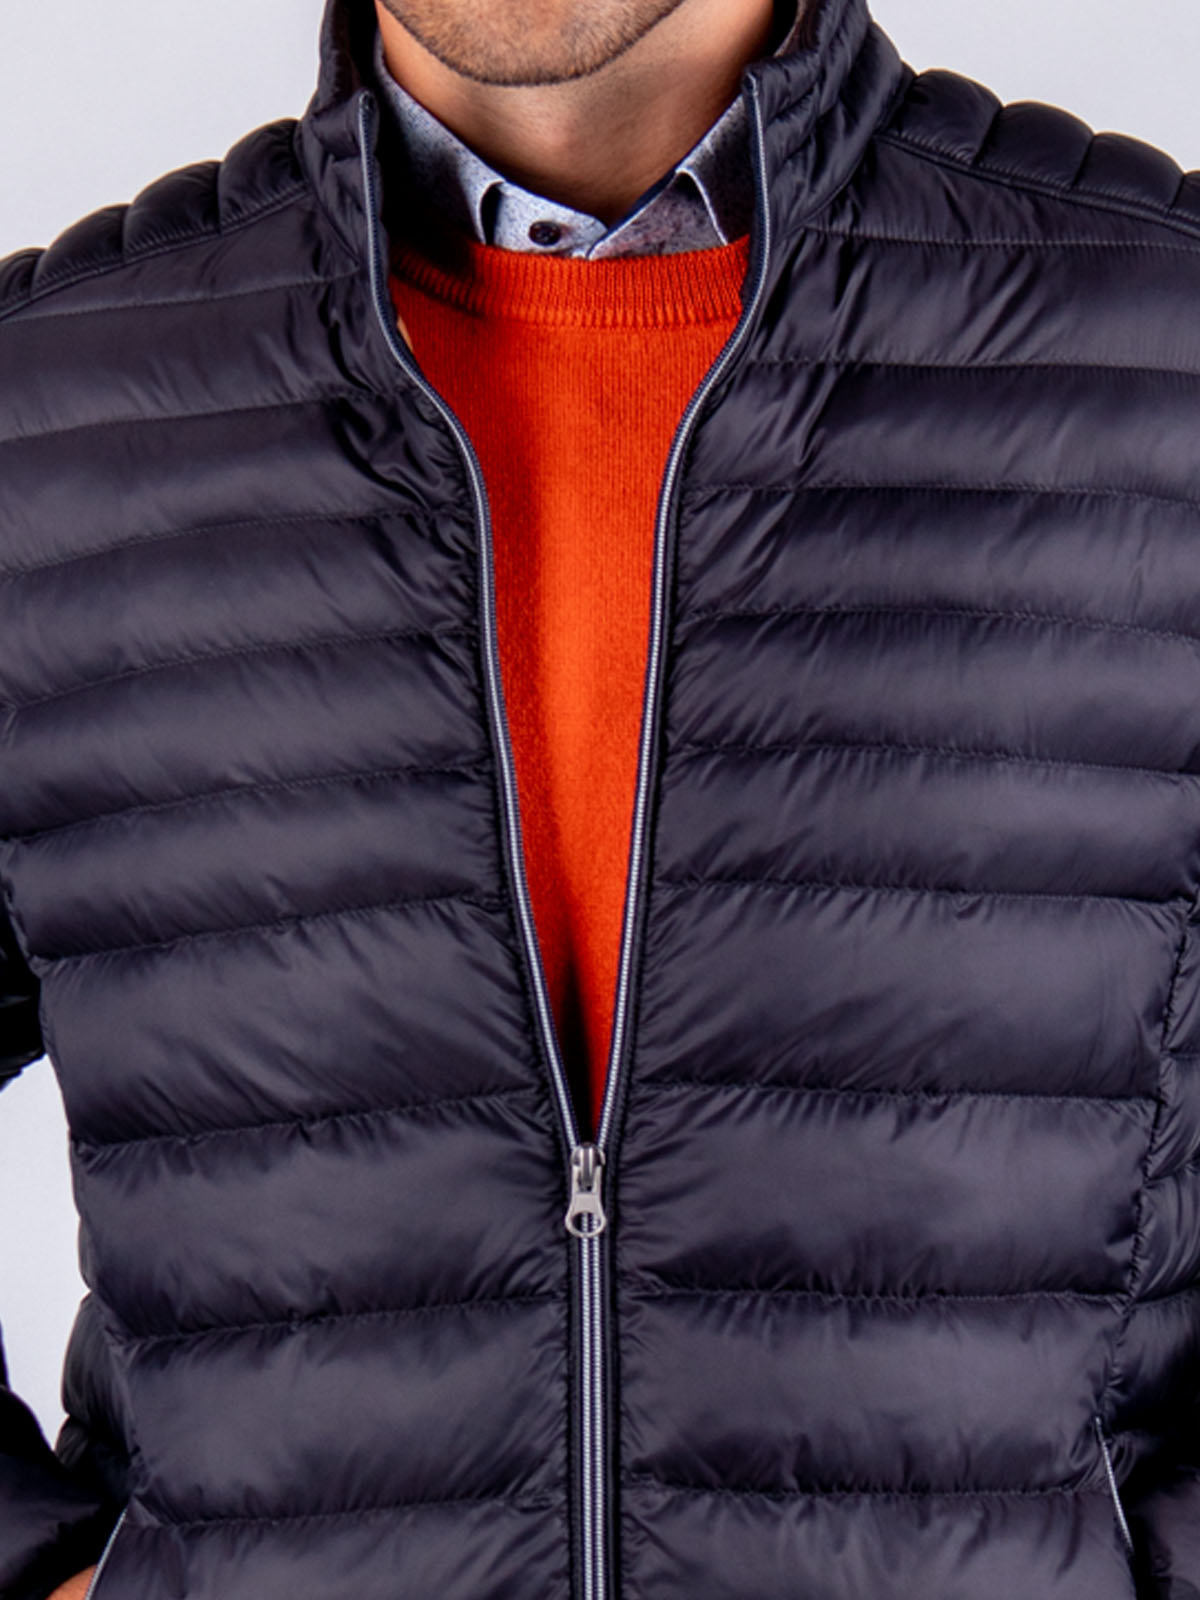 Jachetă neagră scurtă matlasată - 65100 € 44.43 img4